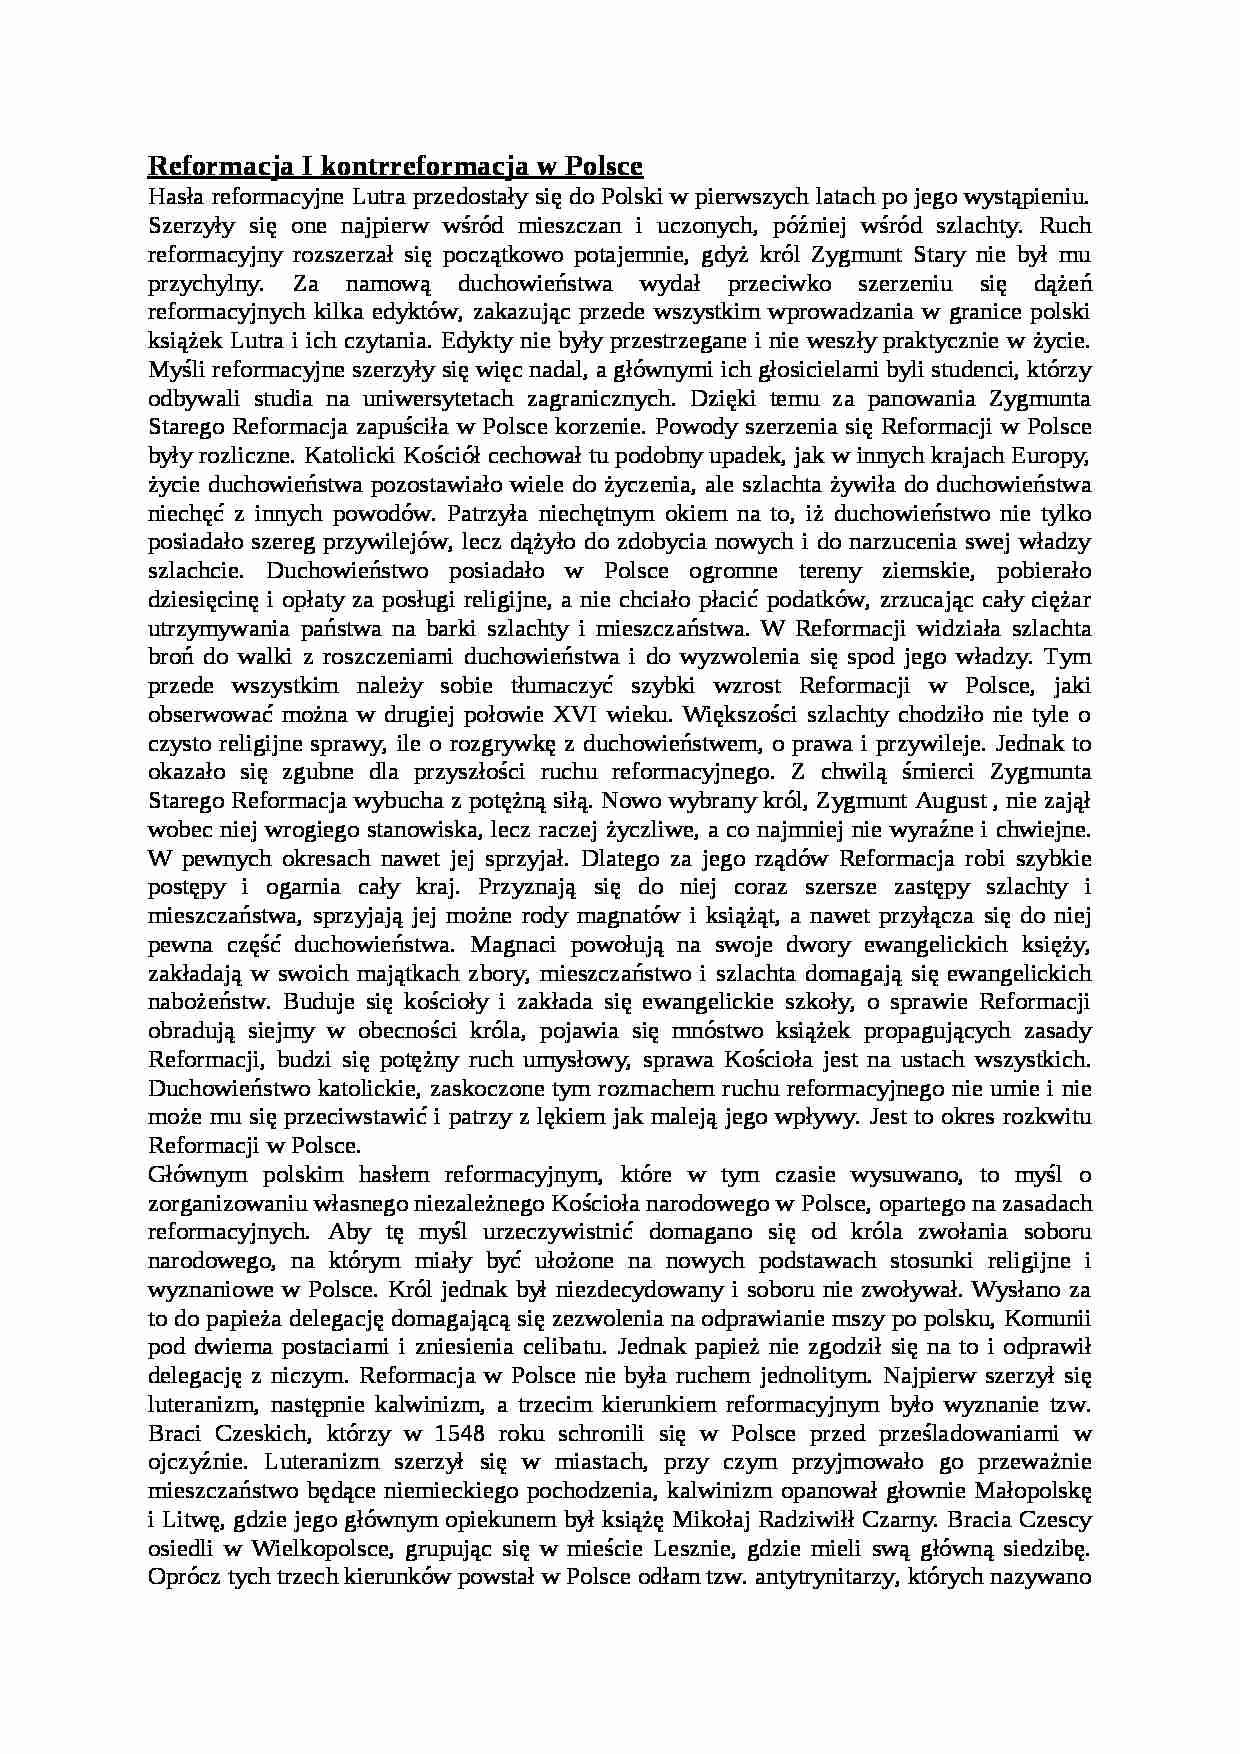 Reformacja I kontrreformacja w Polsce - omówienie - strona 1